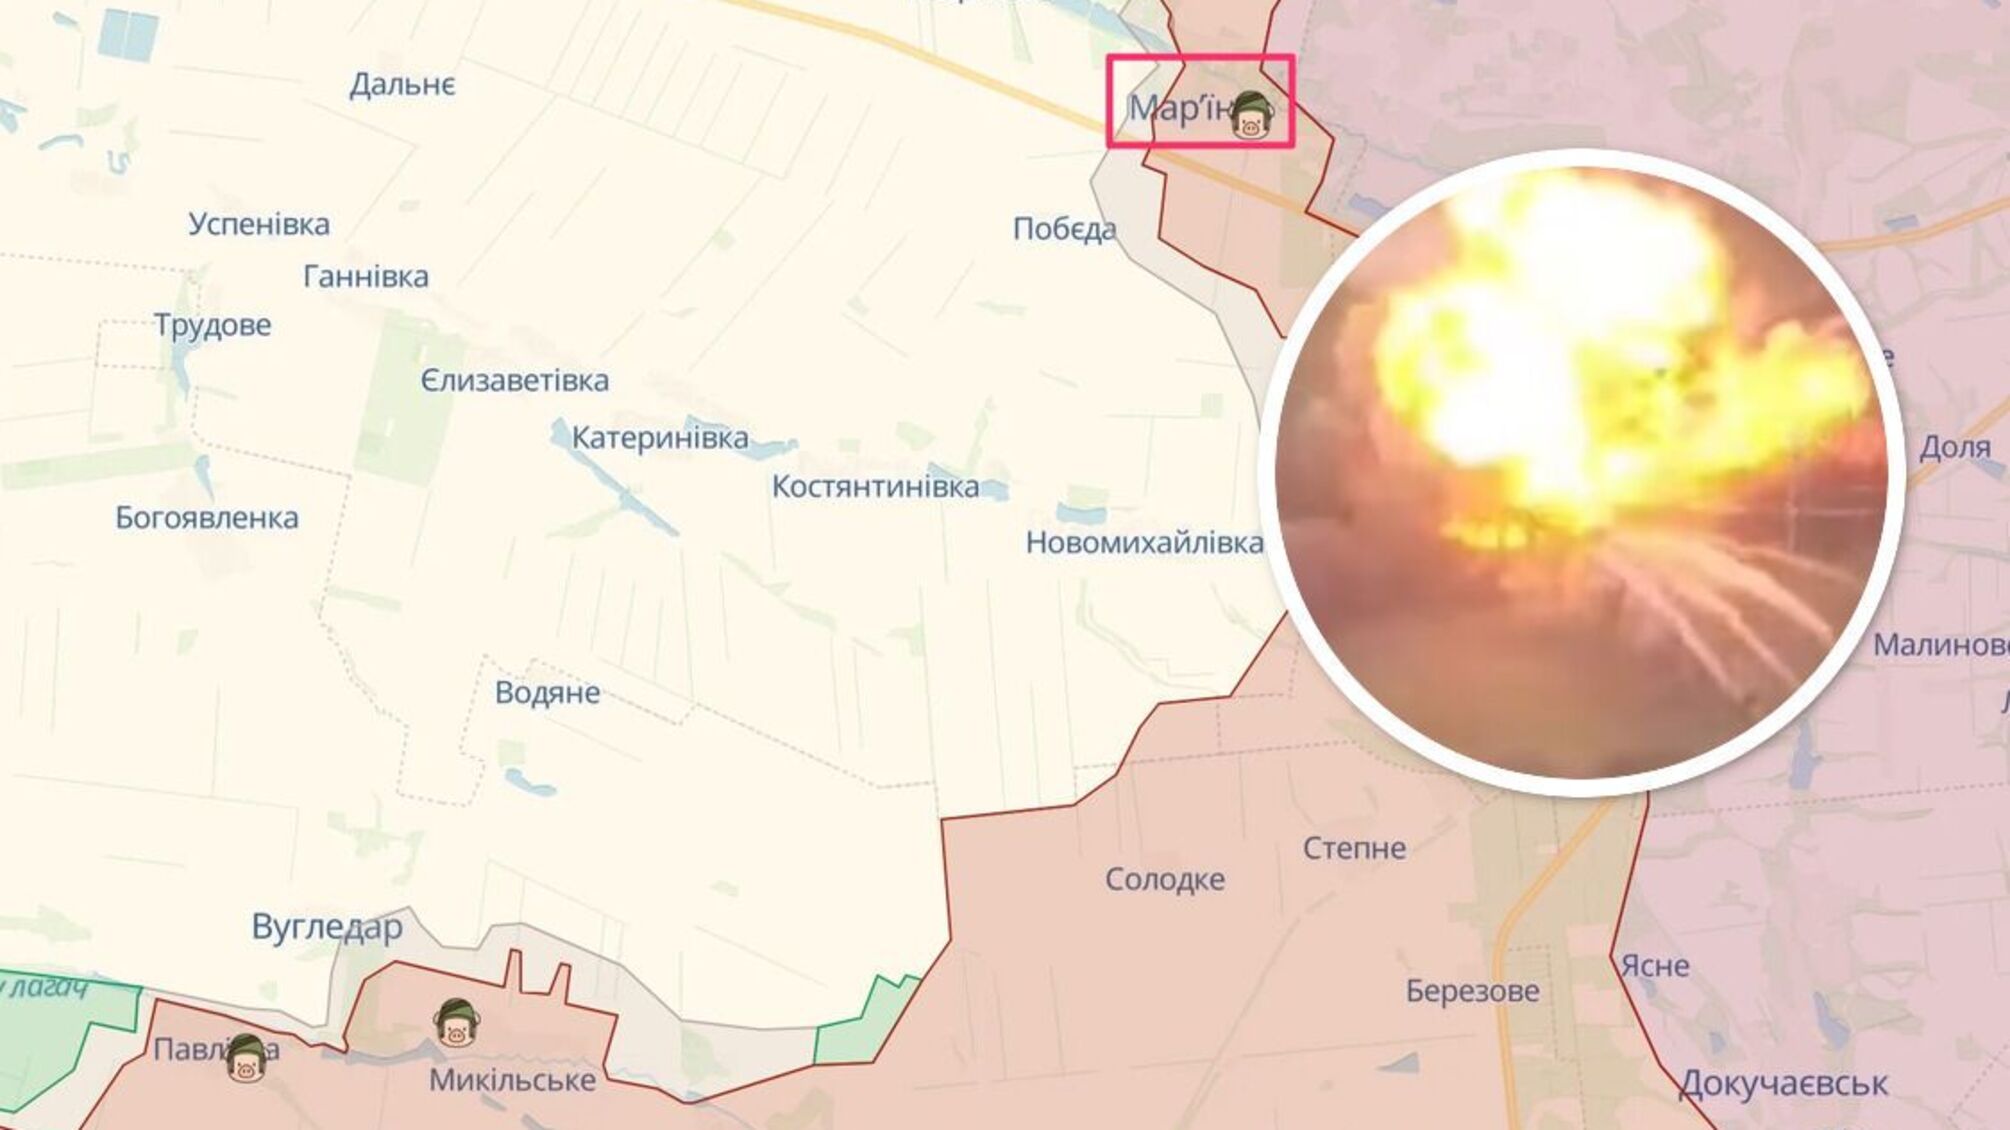 Бойцы ВСУ разбили танковую колонну россии в районе Марьинки Донецкой области, – DeepState